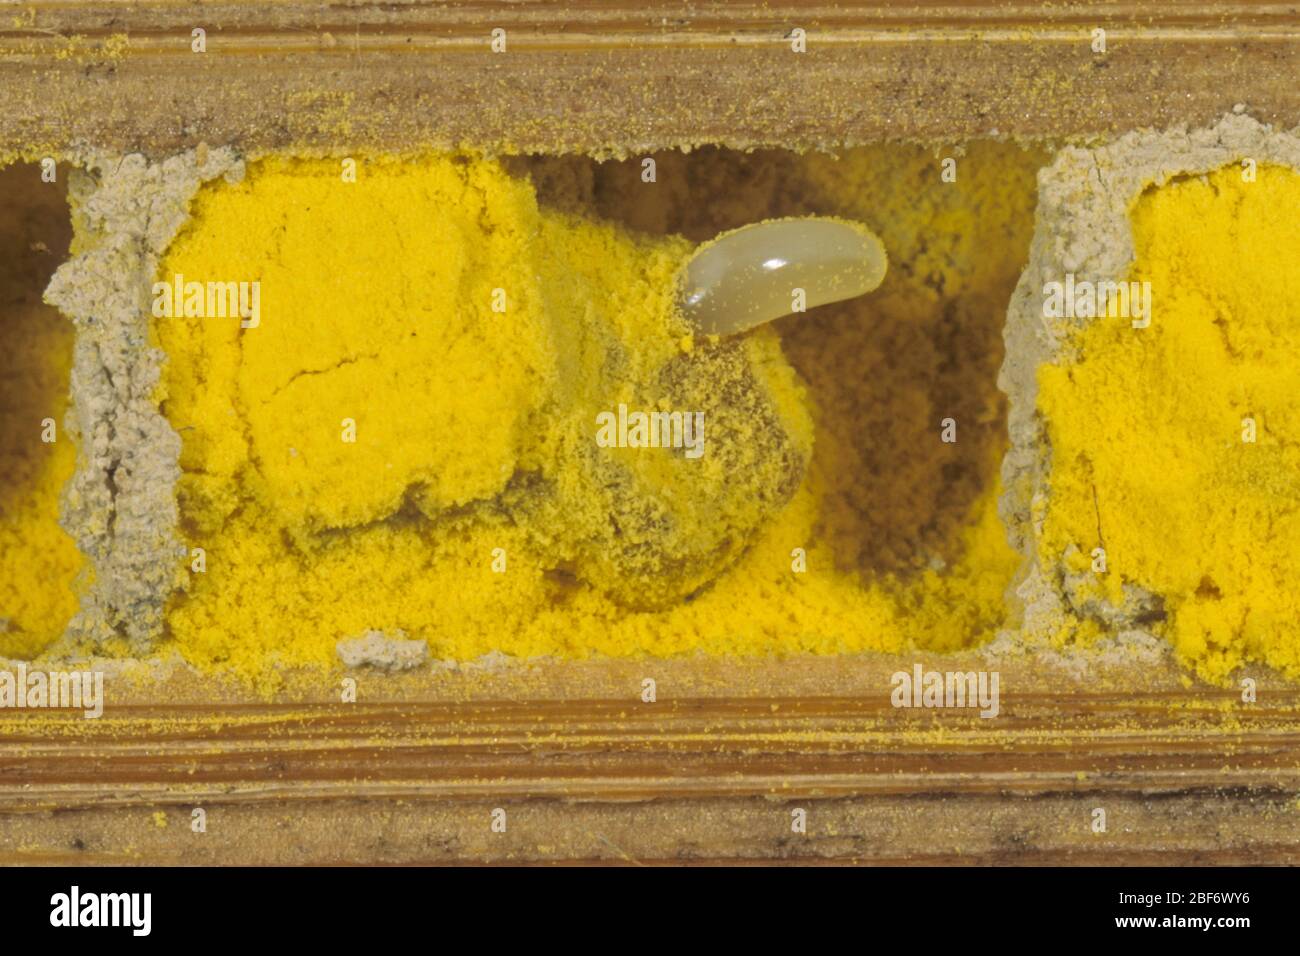 Abeille maçon rouge (Osmia rufa, Osmia bicornis), vue transversale d'un tube de reproduction avec oeuf et pollen, Allemagne Banque D'Images